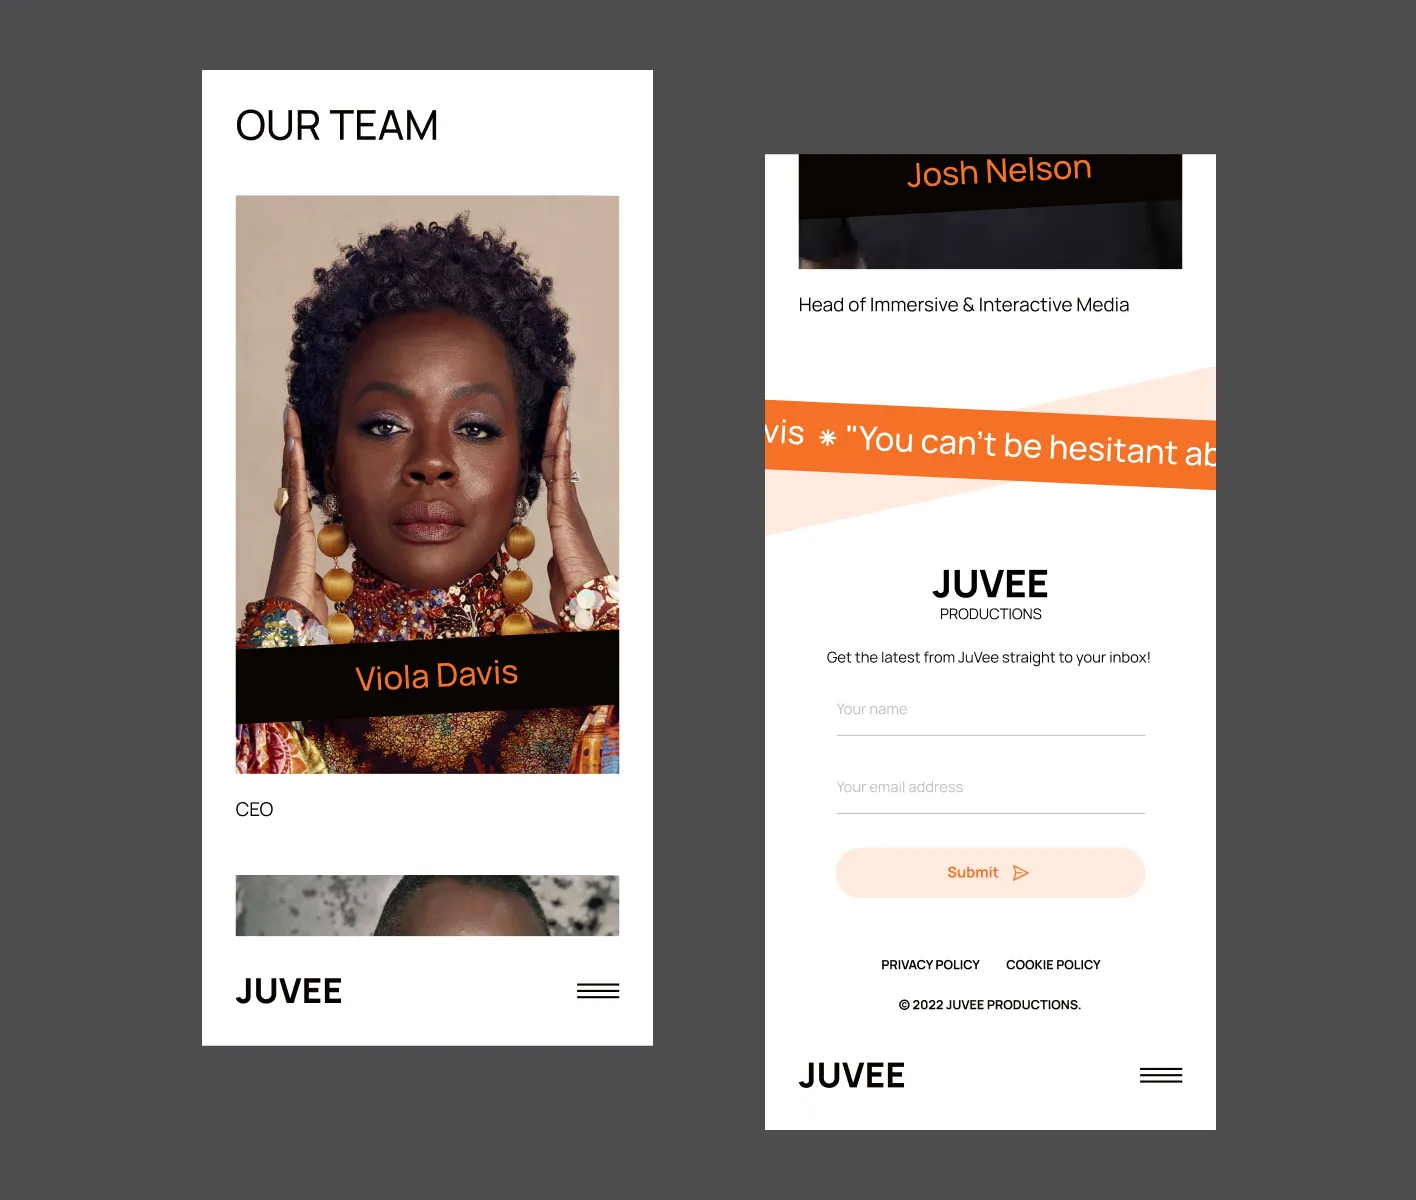 juvee productions showcase image